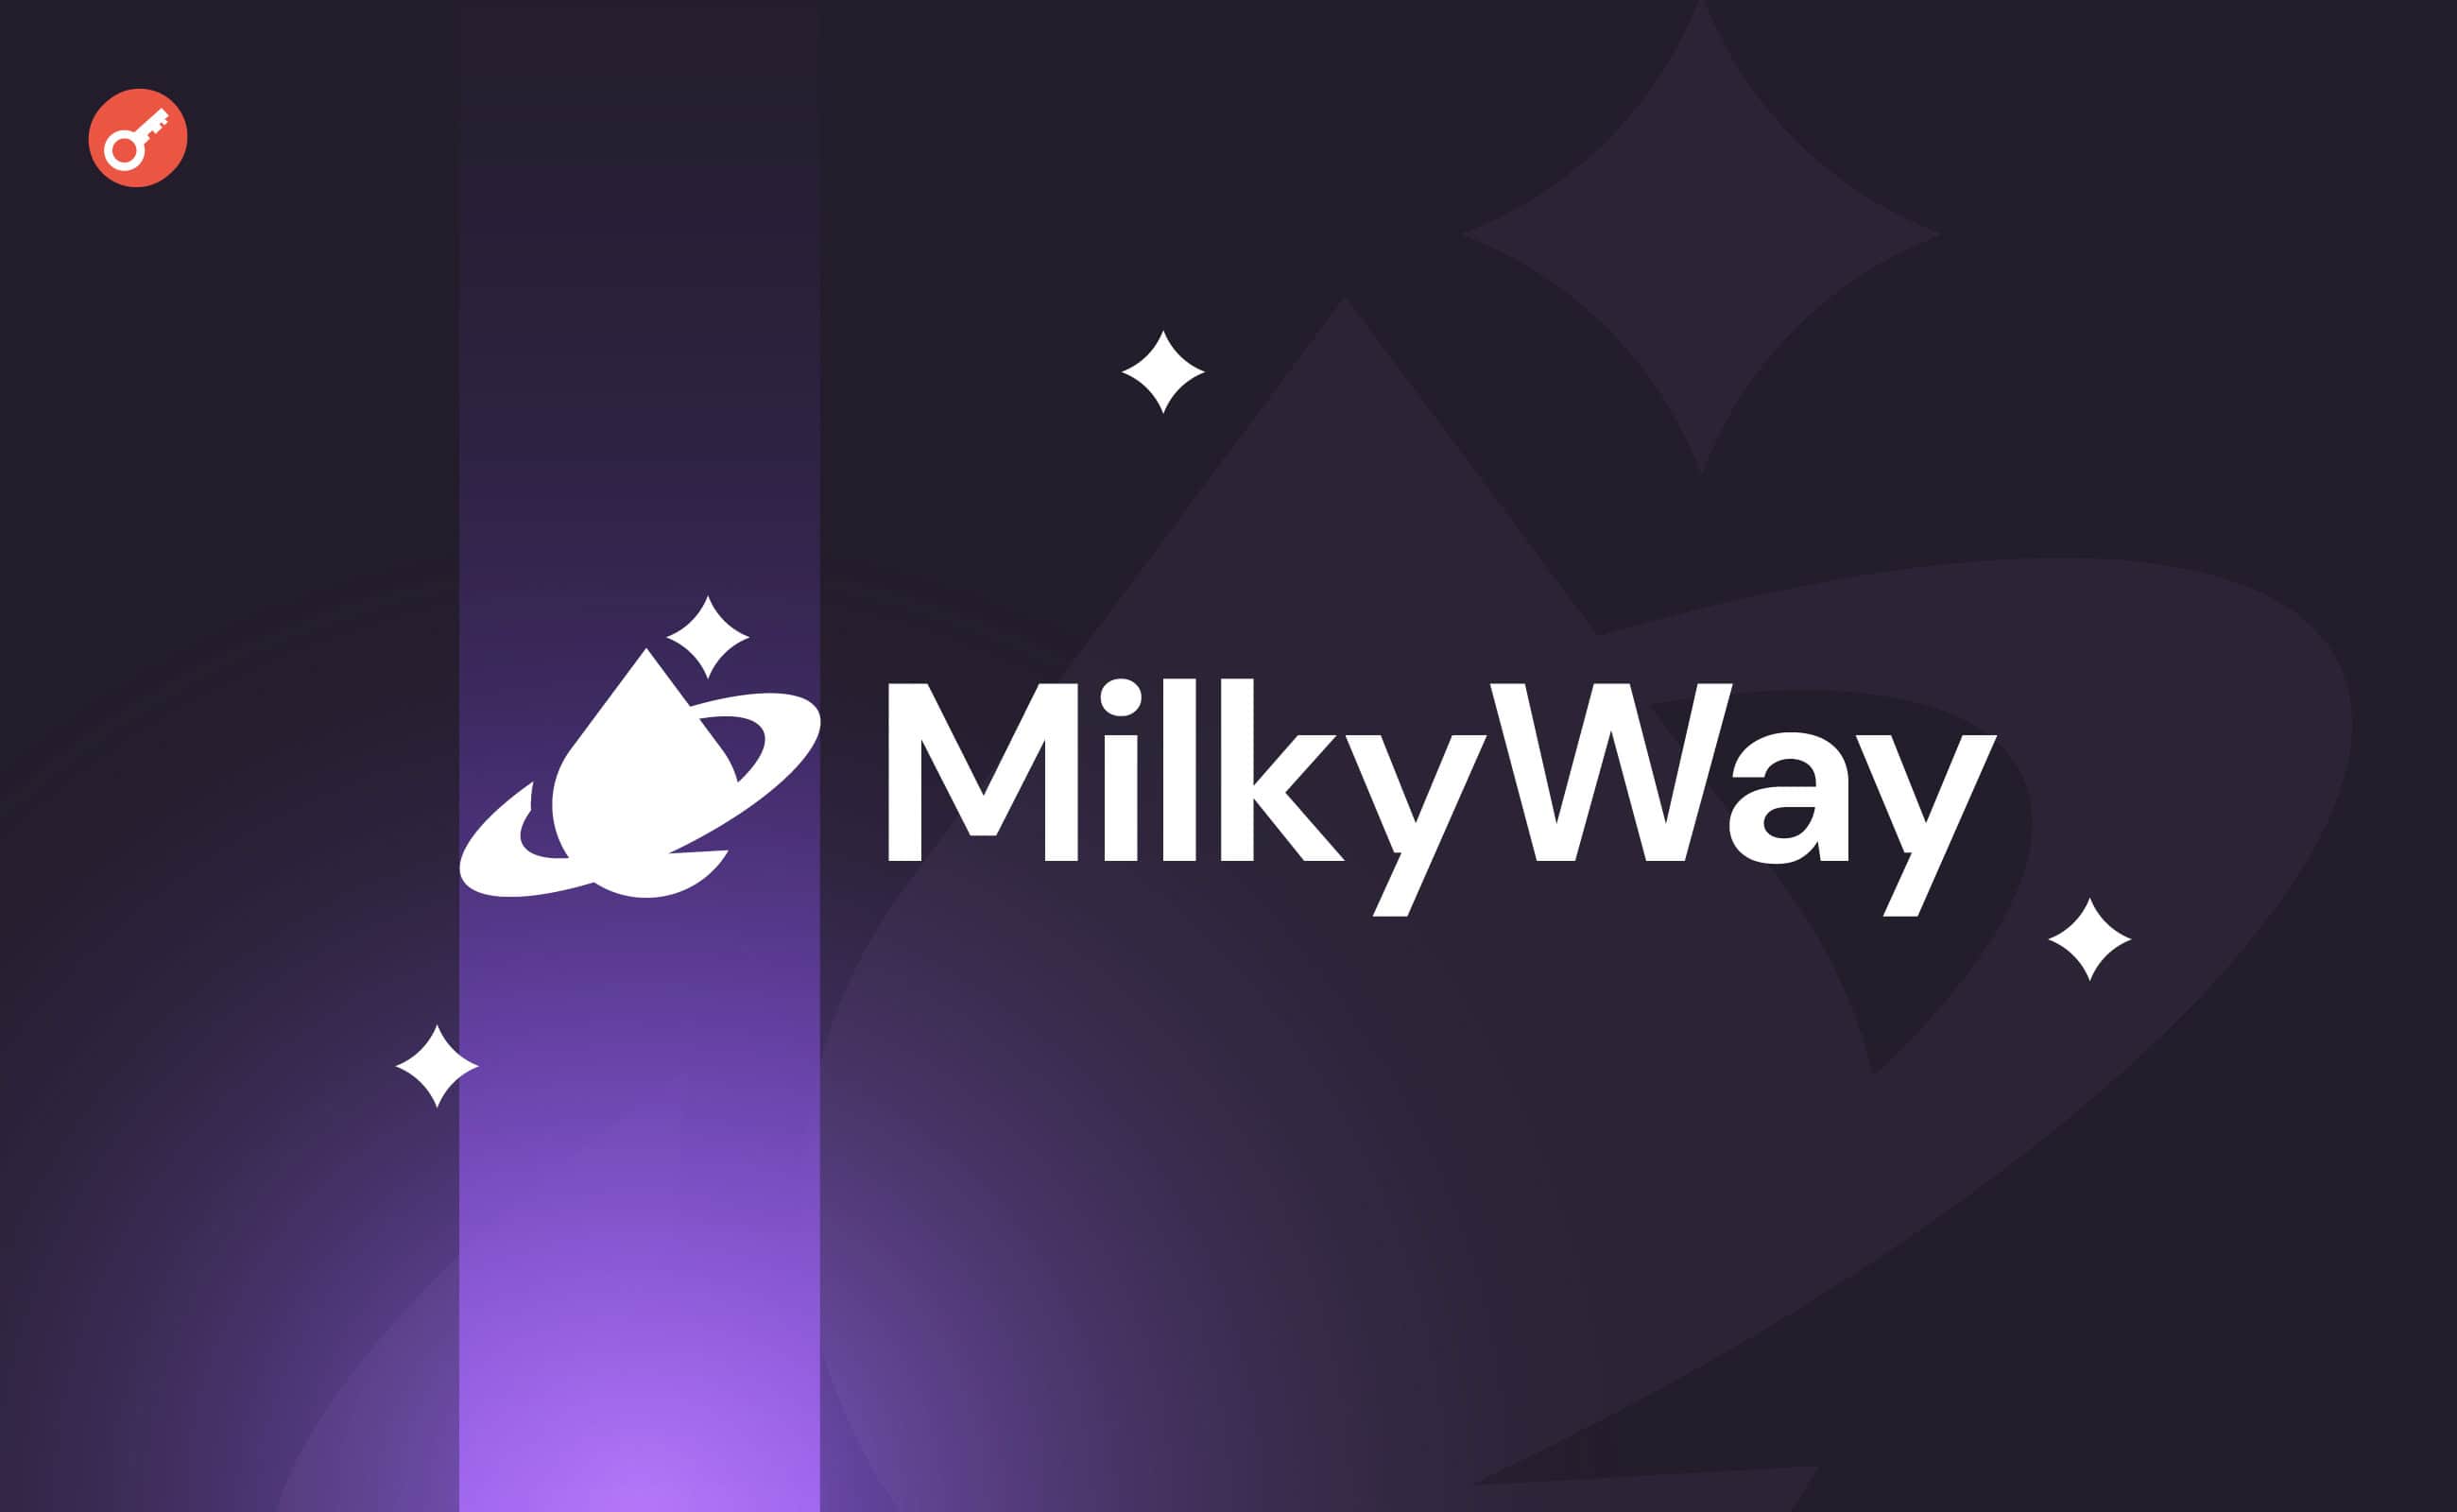 Протокол ліквідного стейкінгу MilkyWay отримав $5 млн інвестицій. Головний колаж новини.